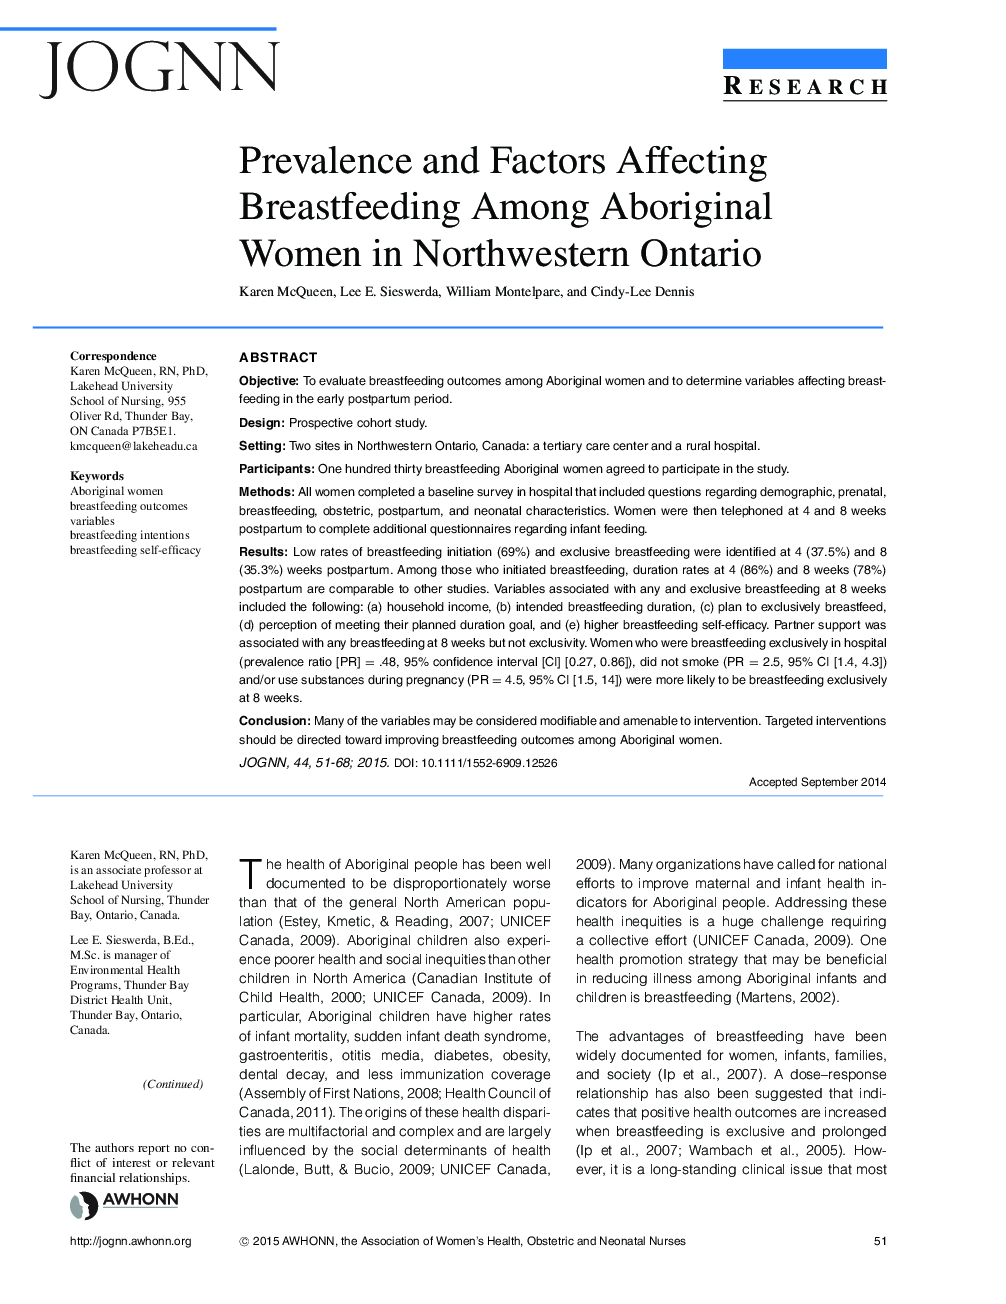 شیوع و عوامل موثر بر شیردهی در میان زنان بومی در شمال غربی انتاریو